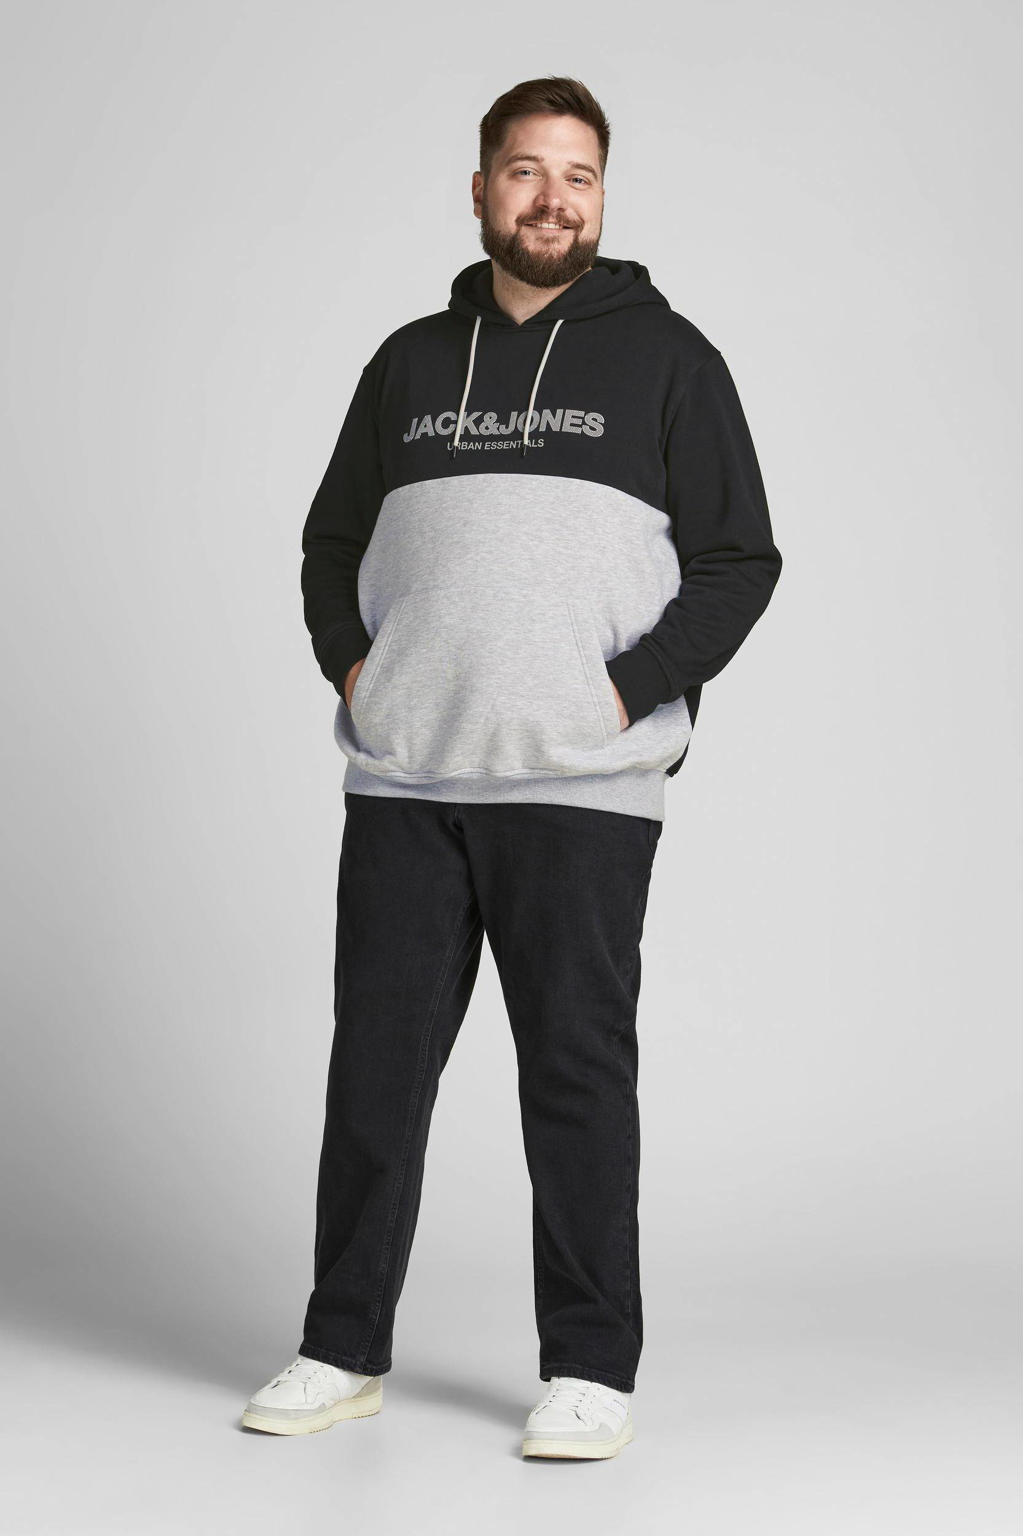 JACK & JONES PLUS SIZE hoodie JJEURBAN Plus Size met logo zwart/grijs